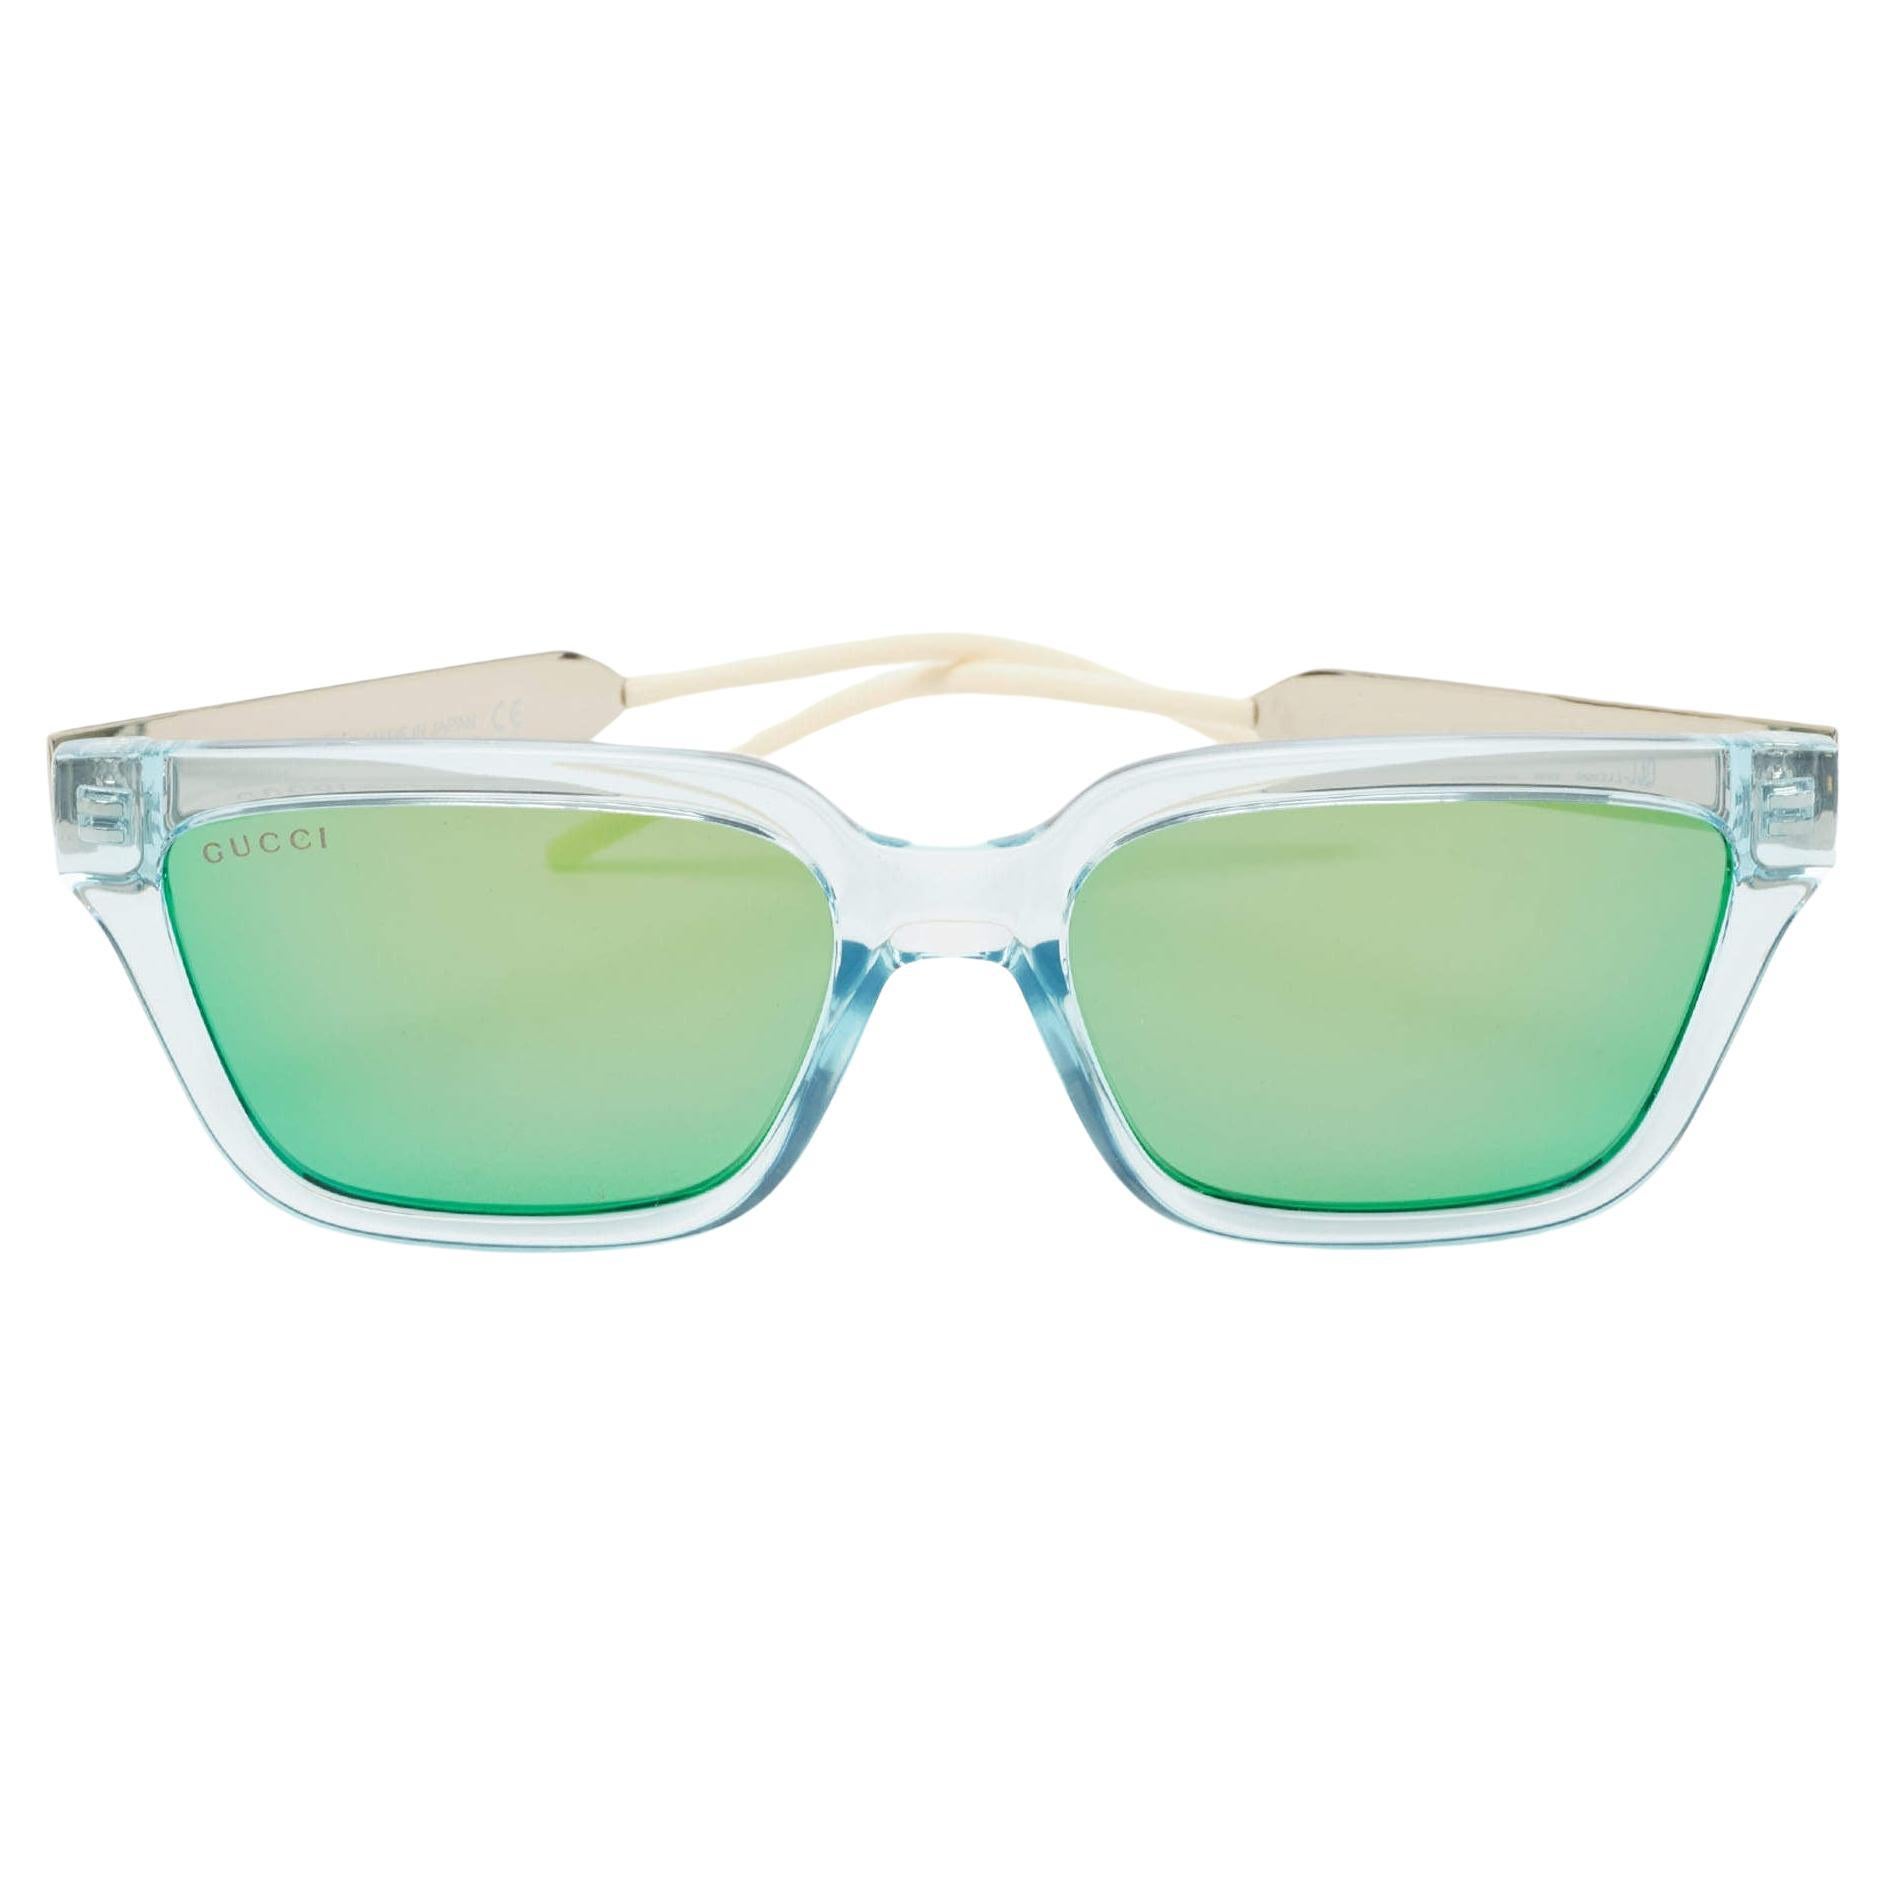 Gucci Light Blue/Metallic Gradient Mirrored Square Sunglasses